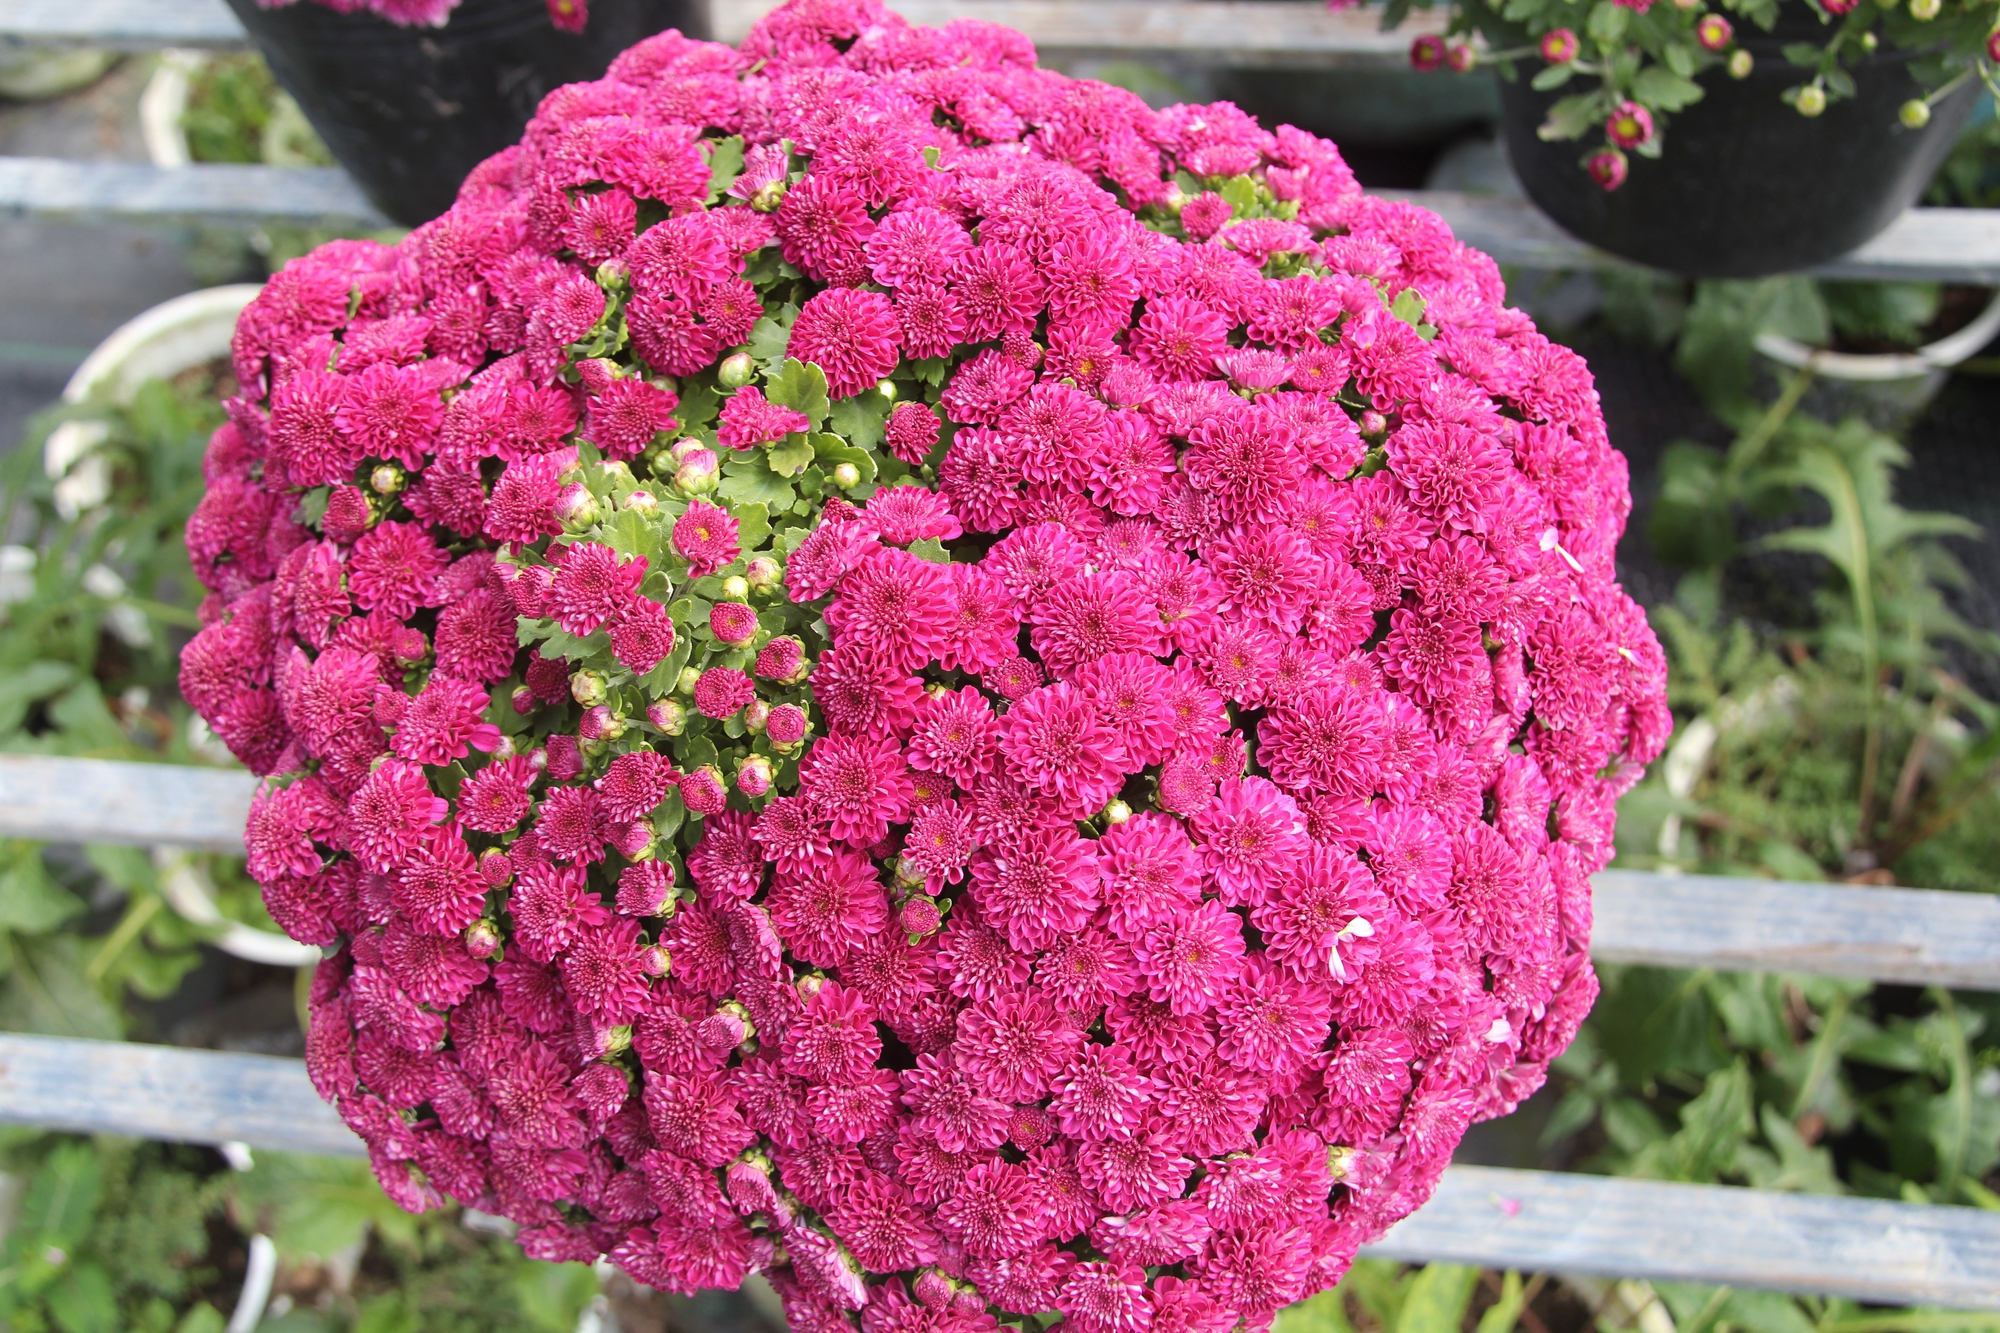 Mê mẩn những chậu hoa cúc nhiều màu tại Festival hoa Sa Đéc - Ảnh 6.